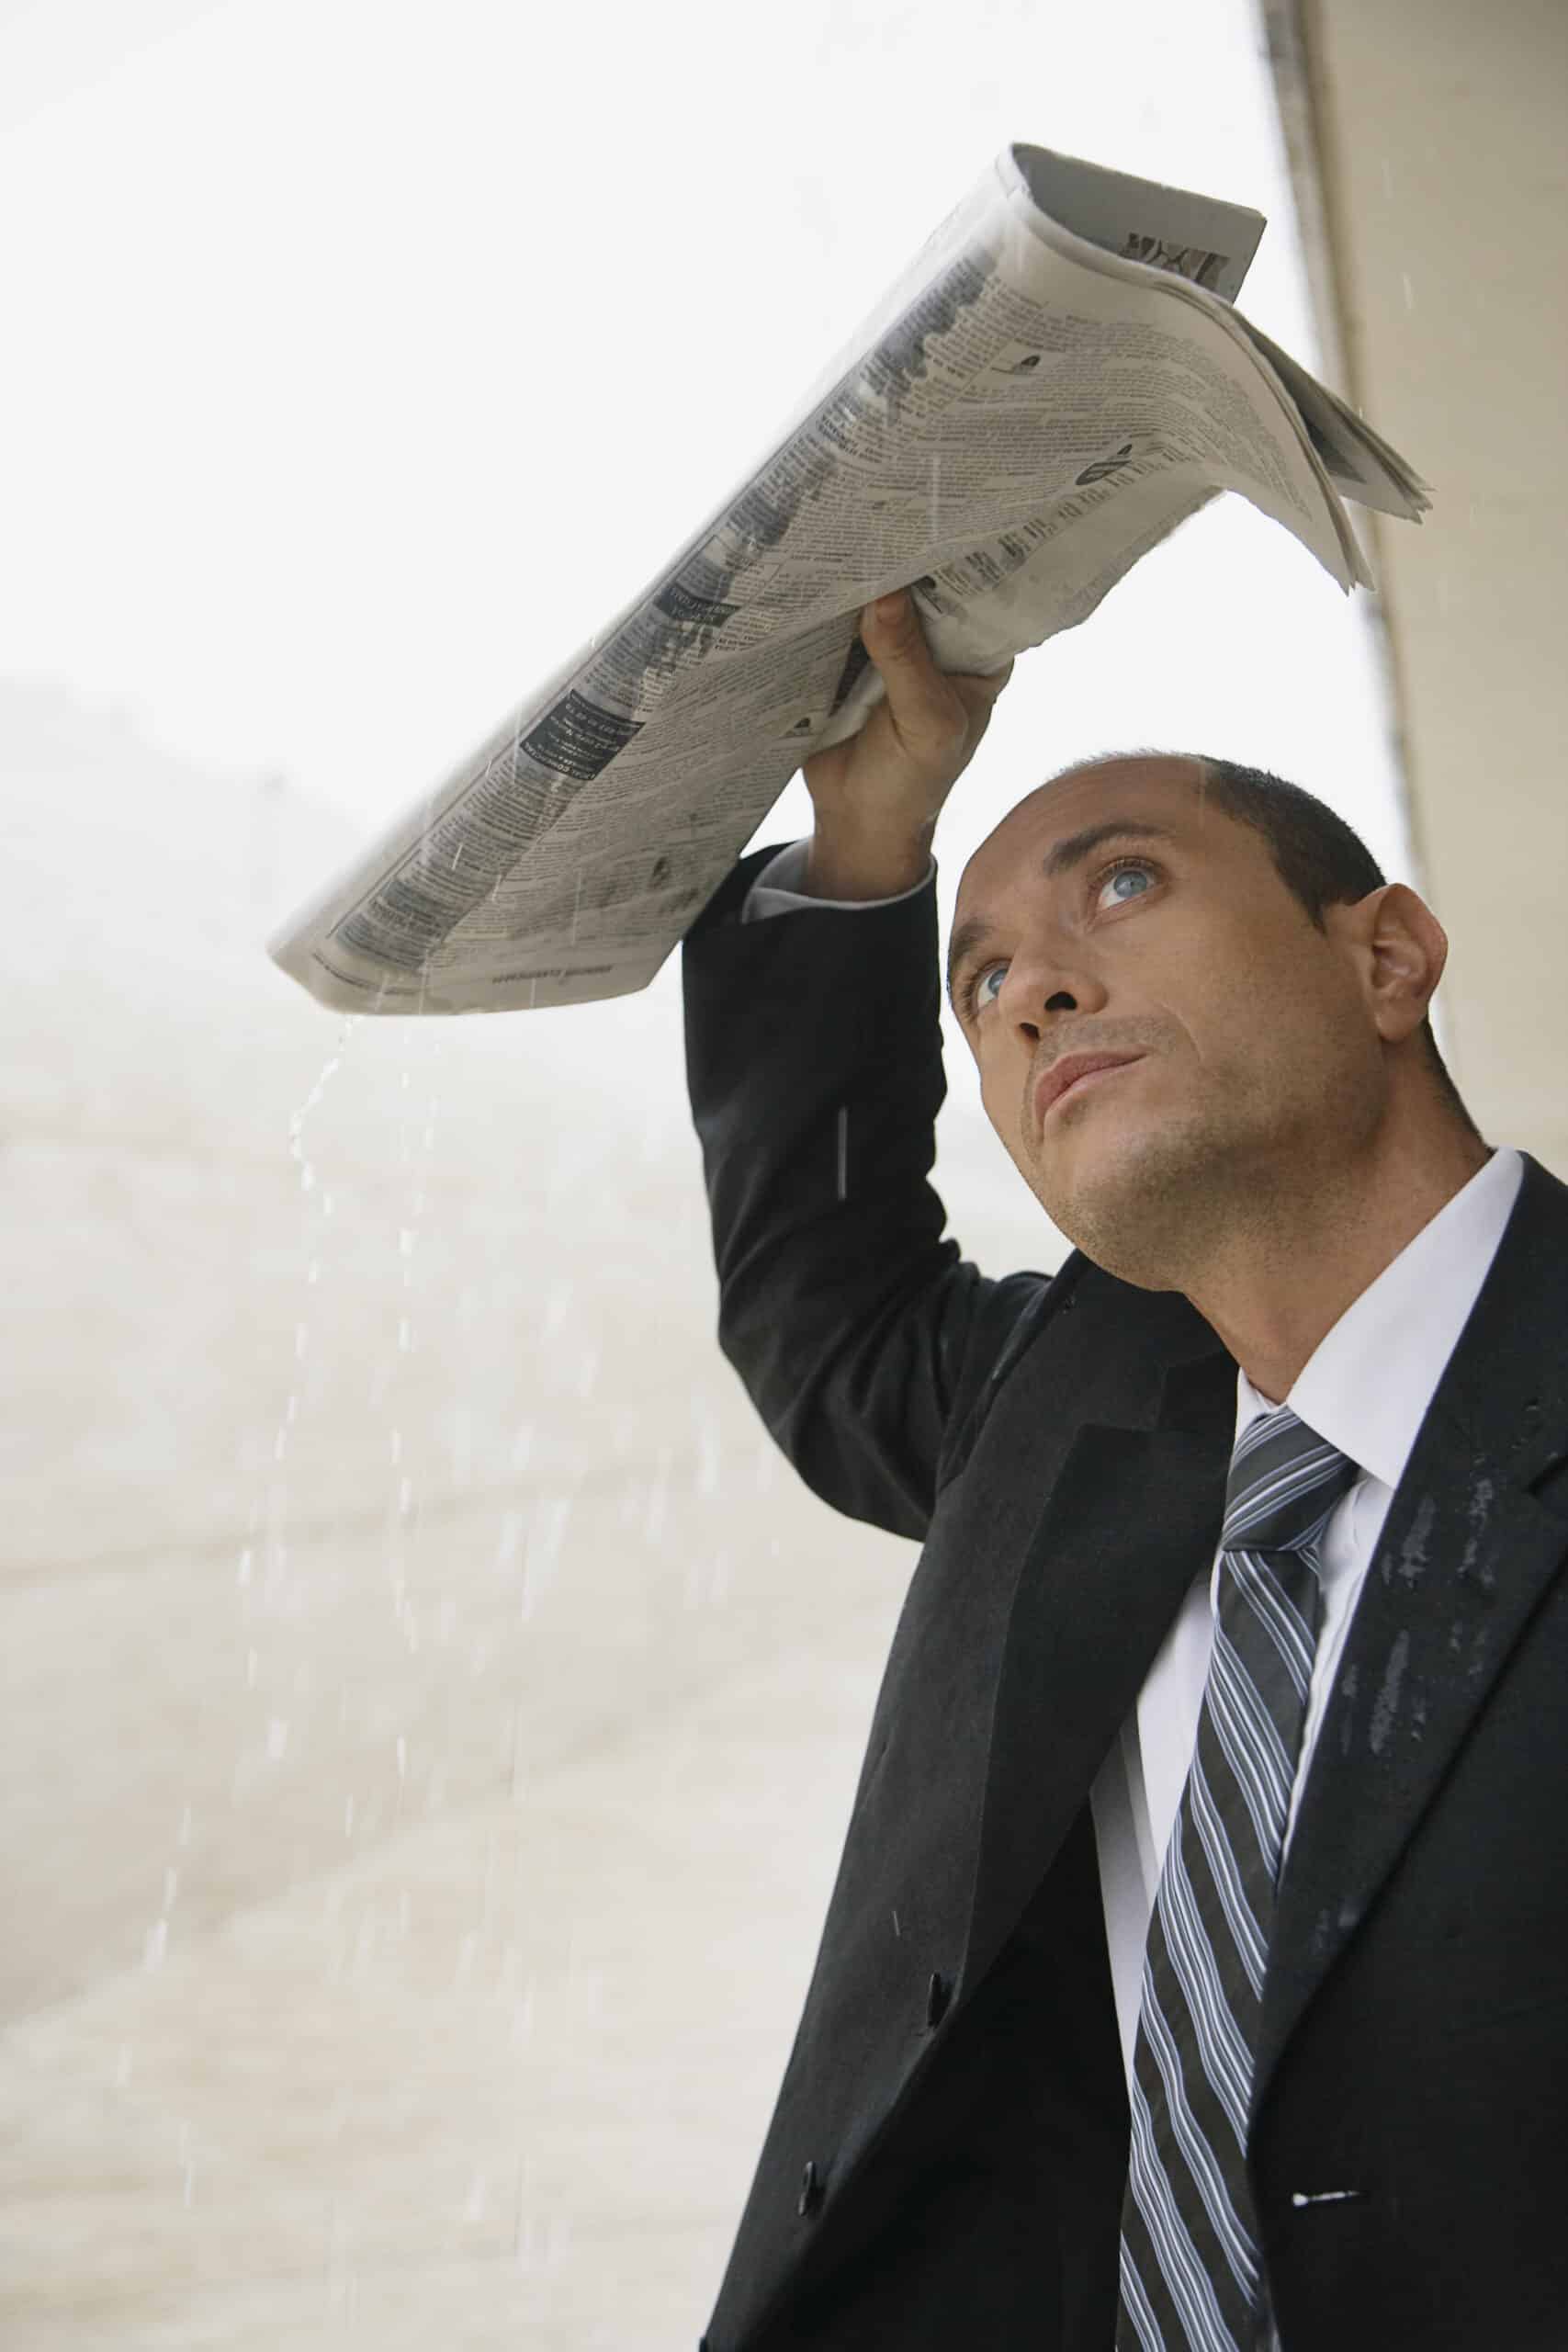 Ein Mann im Anzug benutzt eine Zeitung als improvisierten Regenschirm im Regen und blickt mit besorgtem Gesichtsausdruck nach oben. © Fotografie Tomas Rodriguez